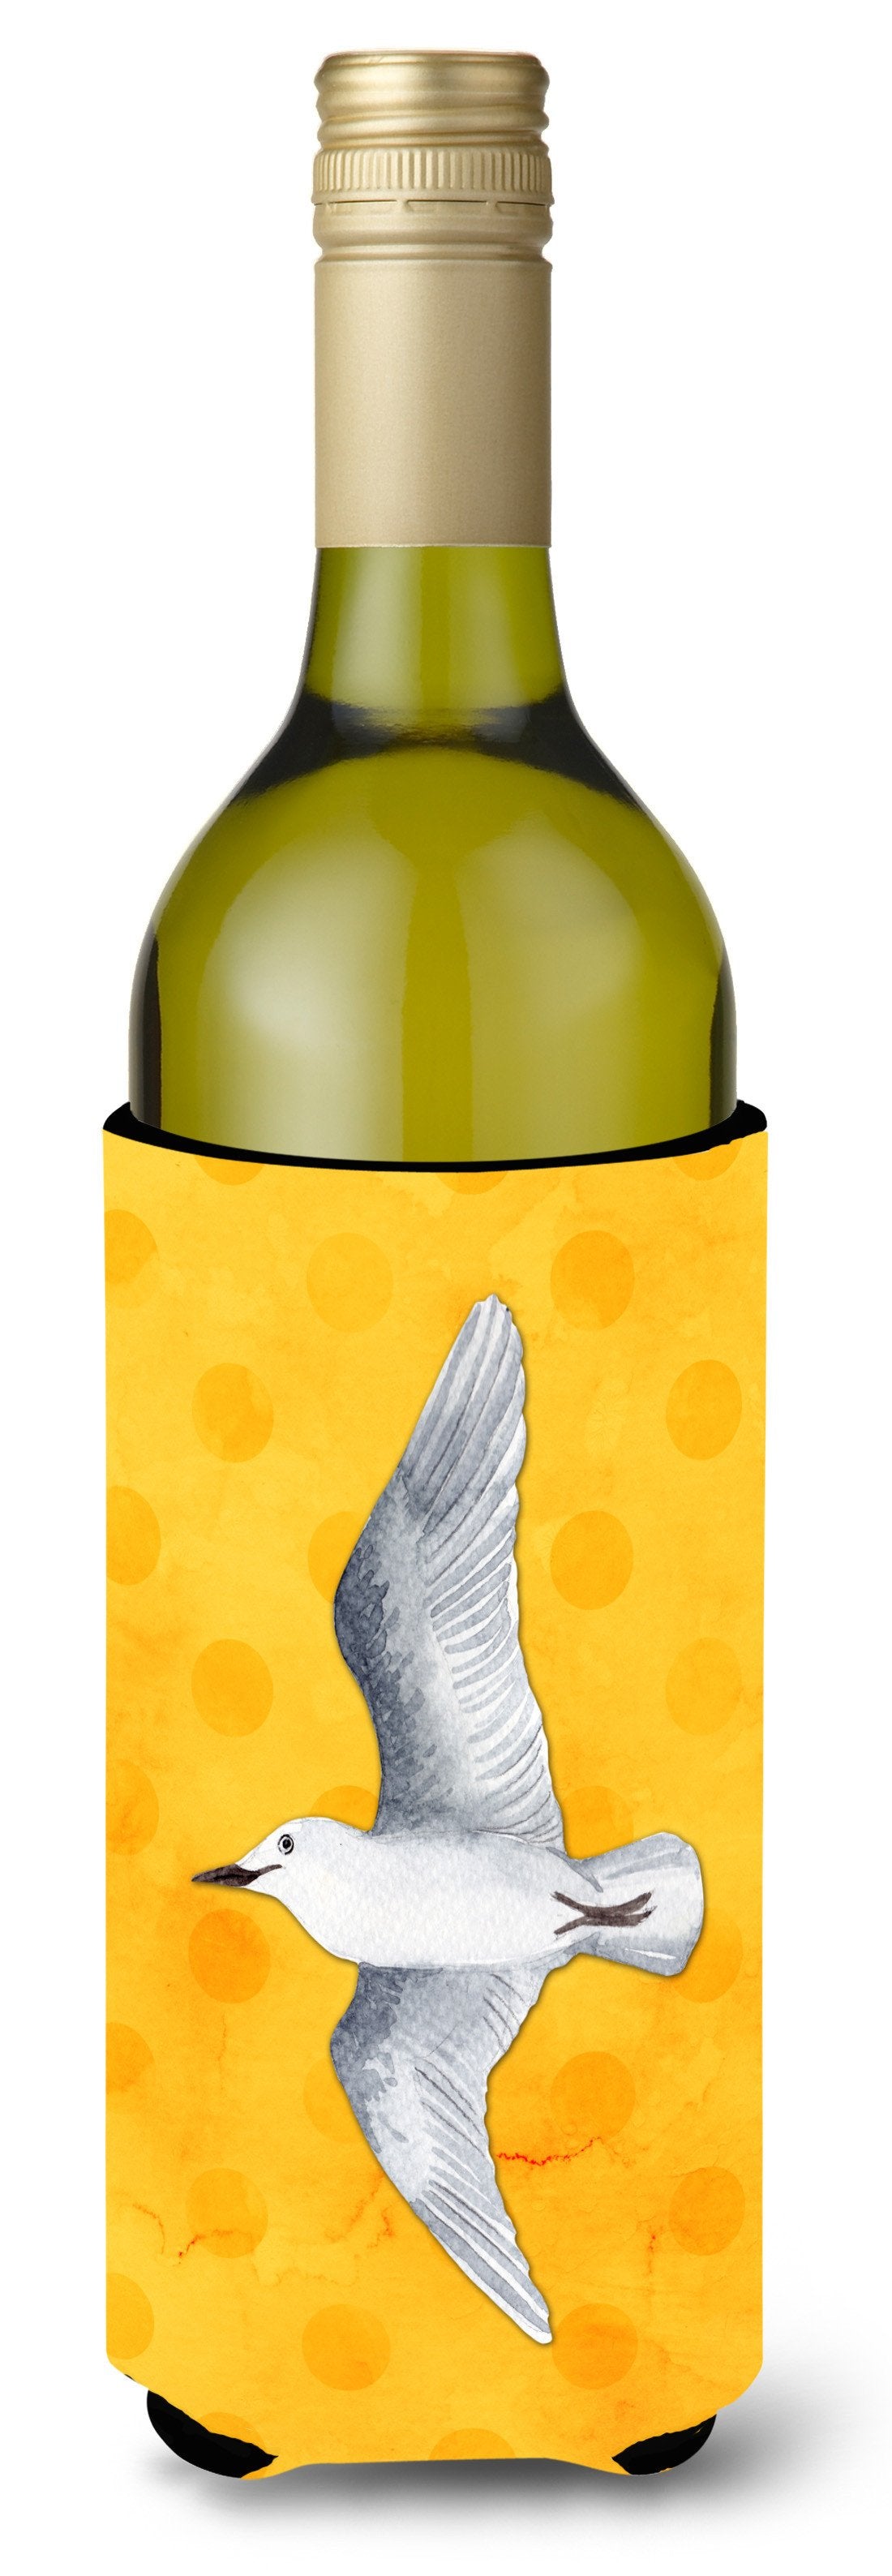 Sea Gull Yellow Polkadot Wine Bottle Beverge Insulator Hugger BB8227LITERK by Caroline's Treasures